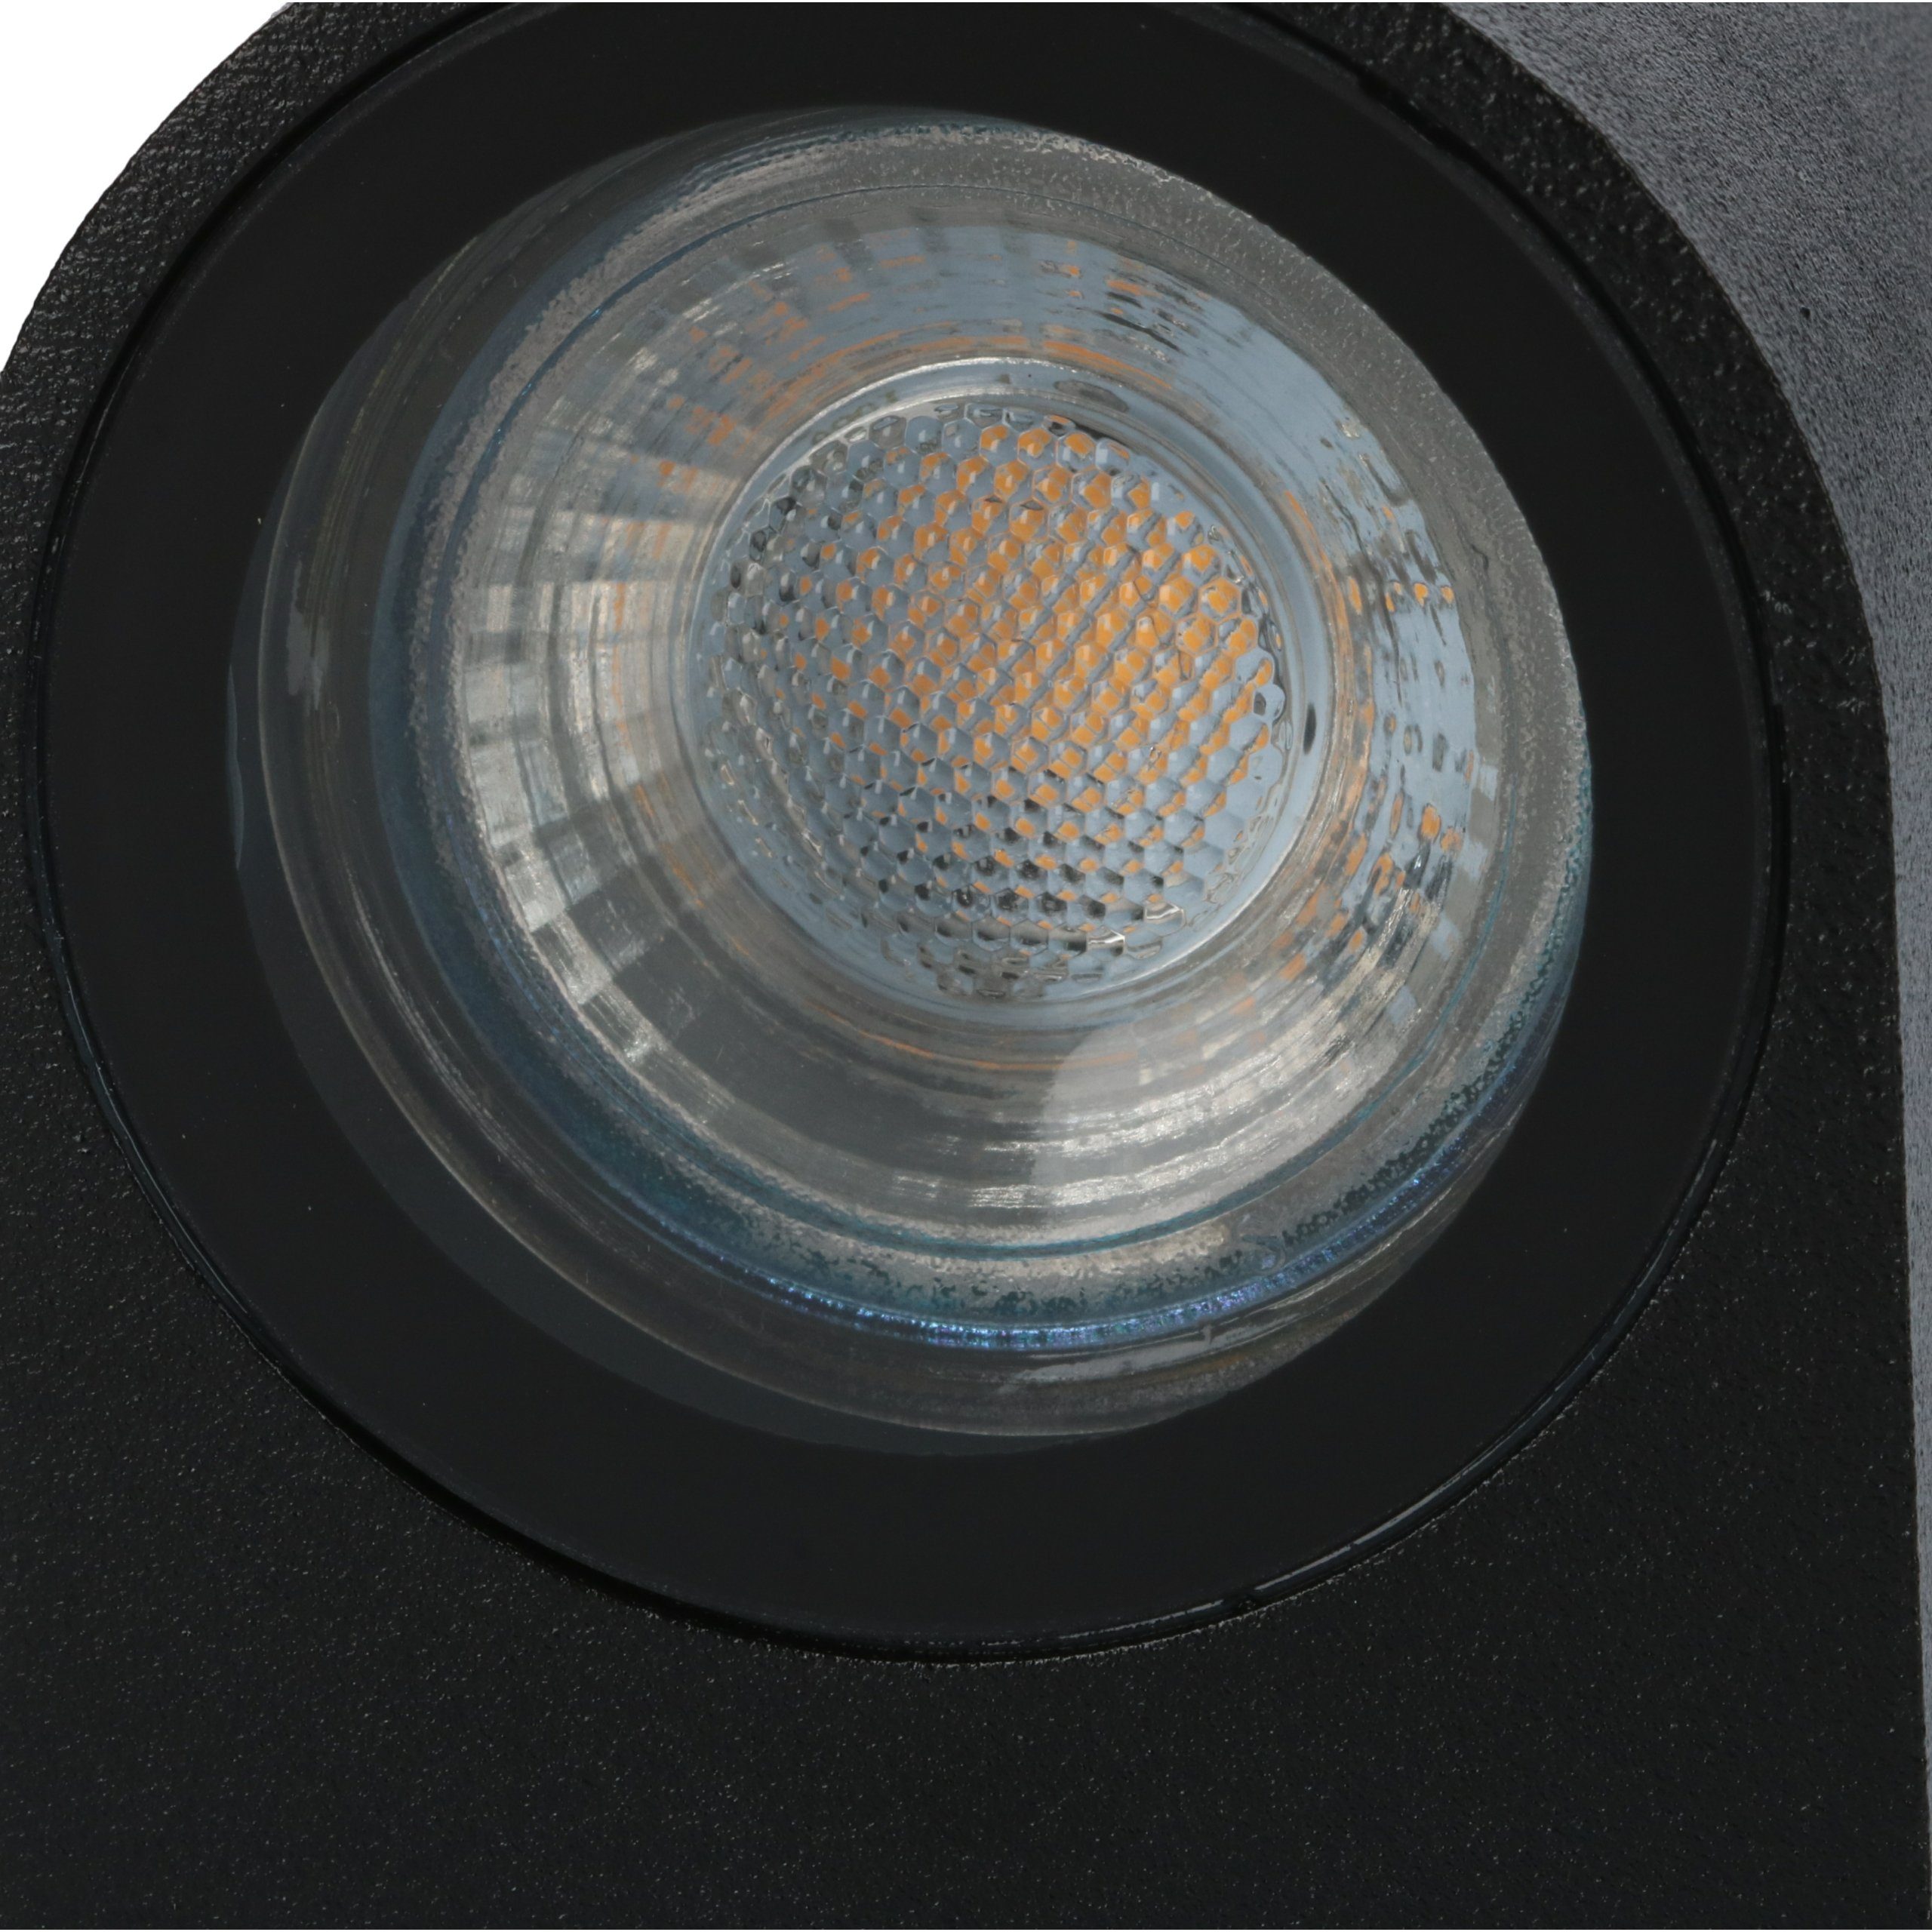 LED 35W und light LED's 1x LED 1000500 Außen-Wandleuchte LED, IP44 Halogen Außen-Wandleuchte, bis für GU10 schwarz